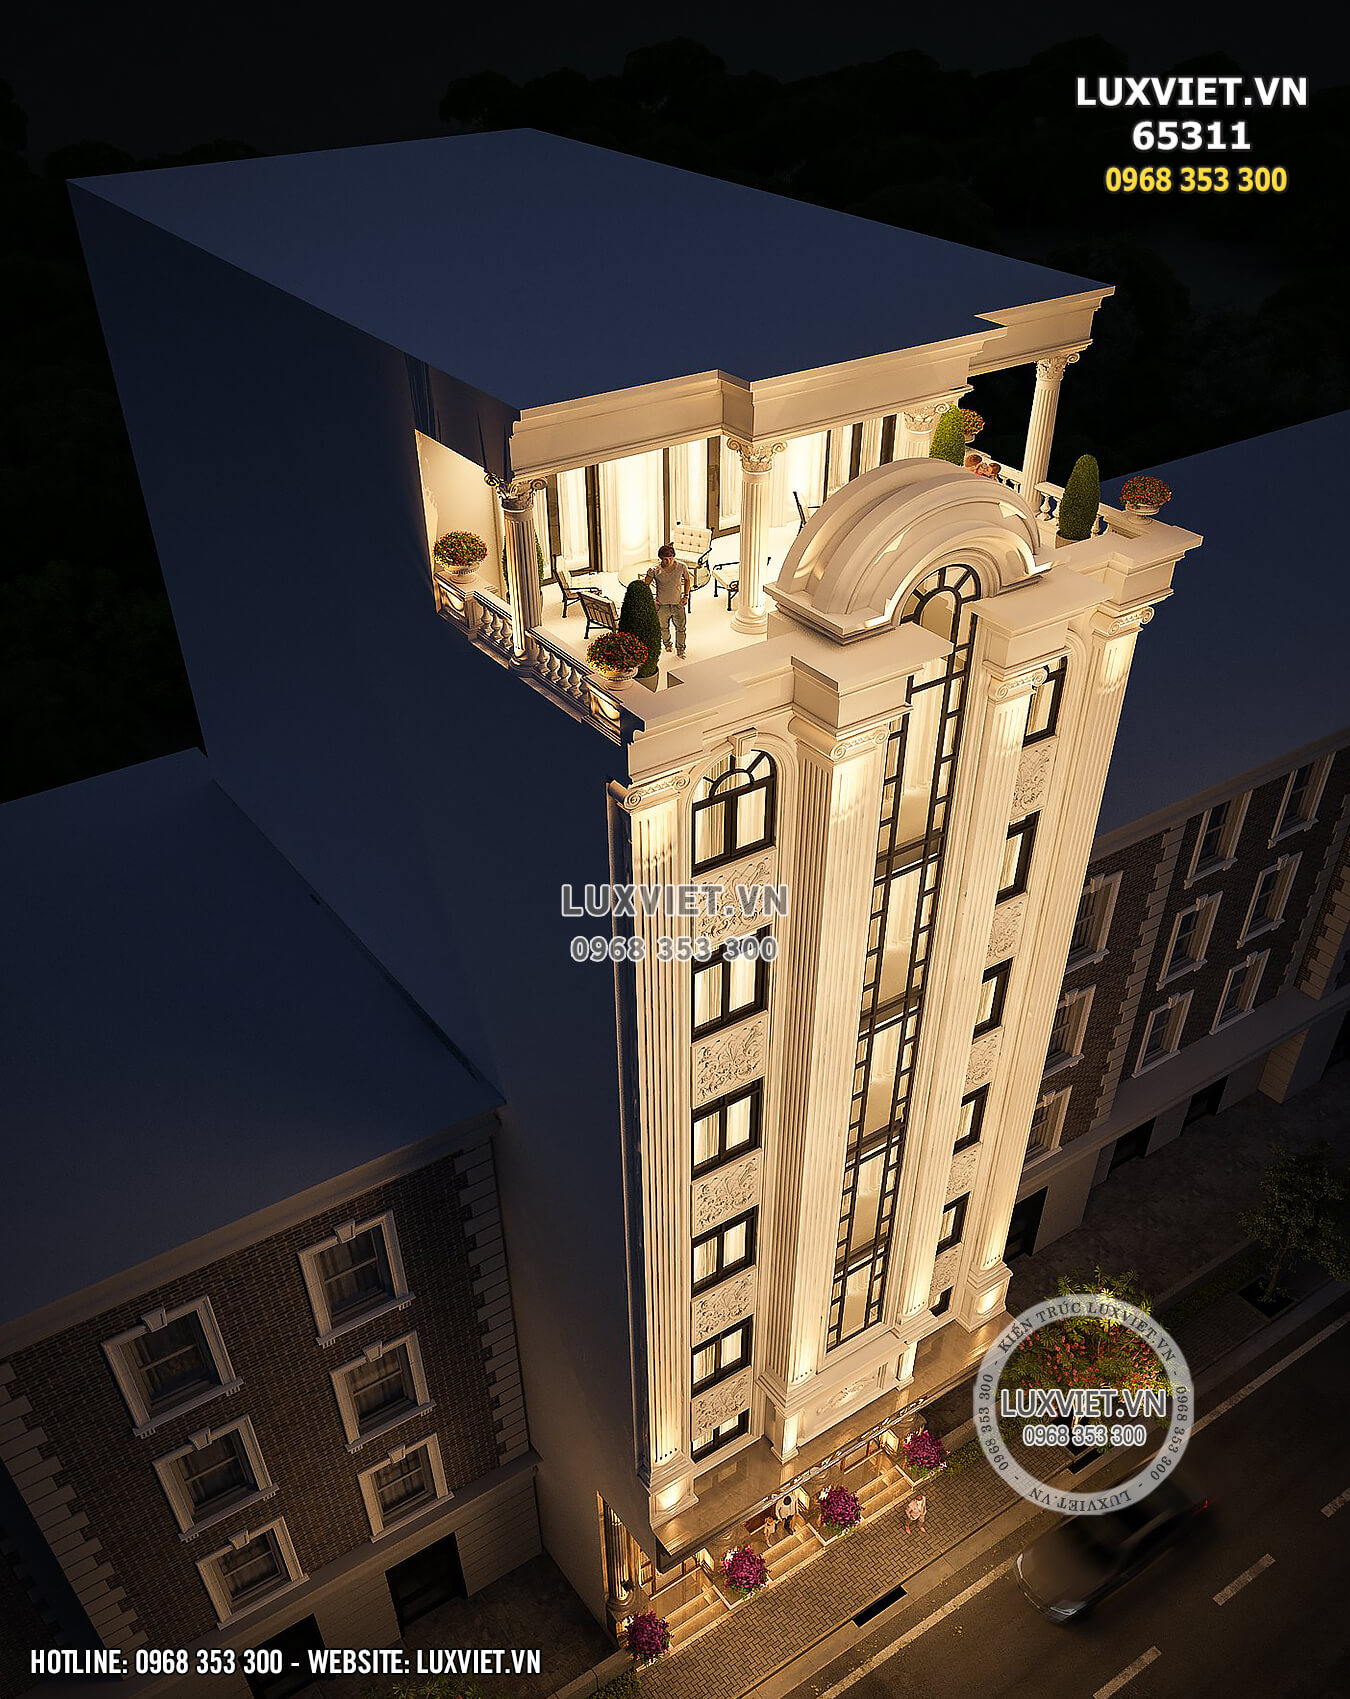 Hình ảnh: Góc nhìn từ trên cao của mẫu khách sạn đẳng cấp này - LV 65311